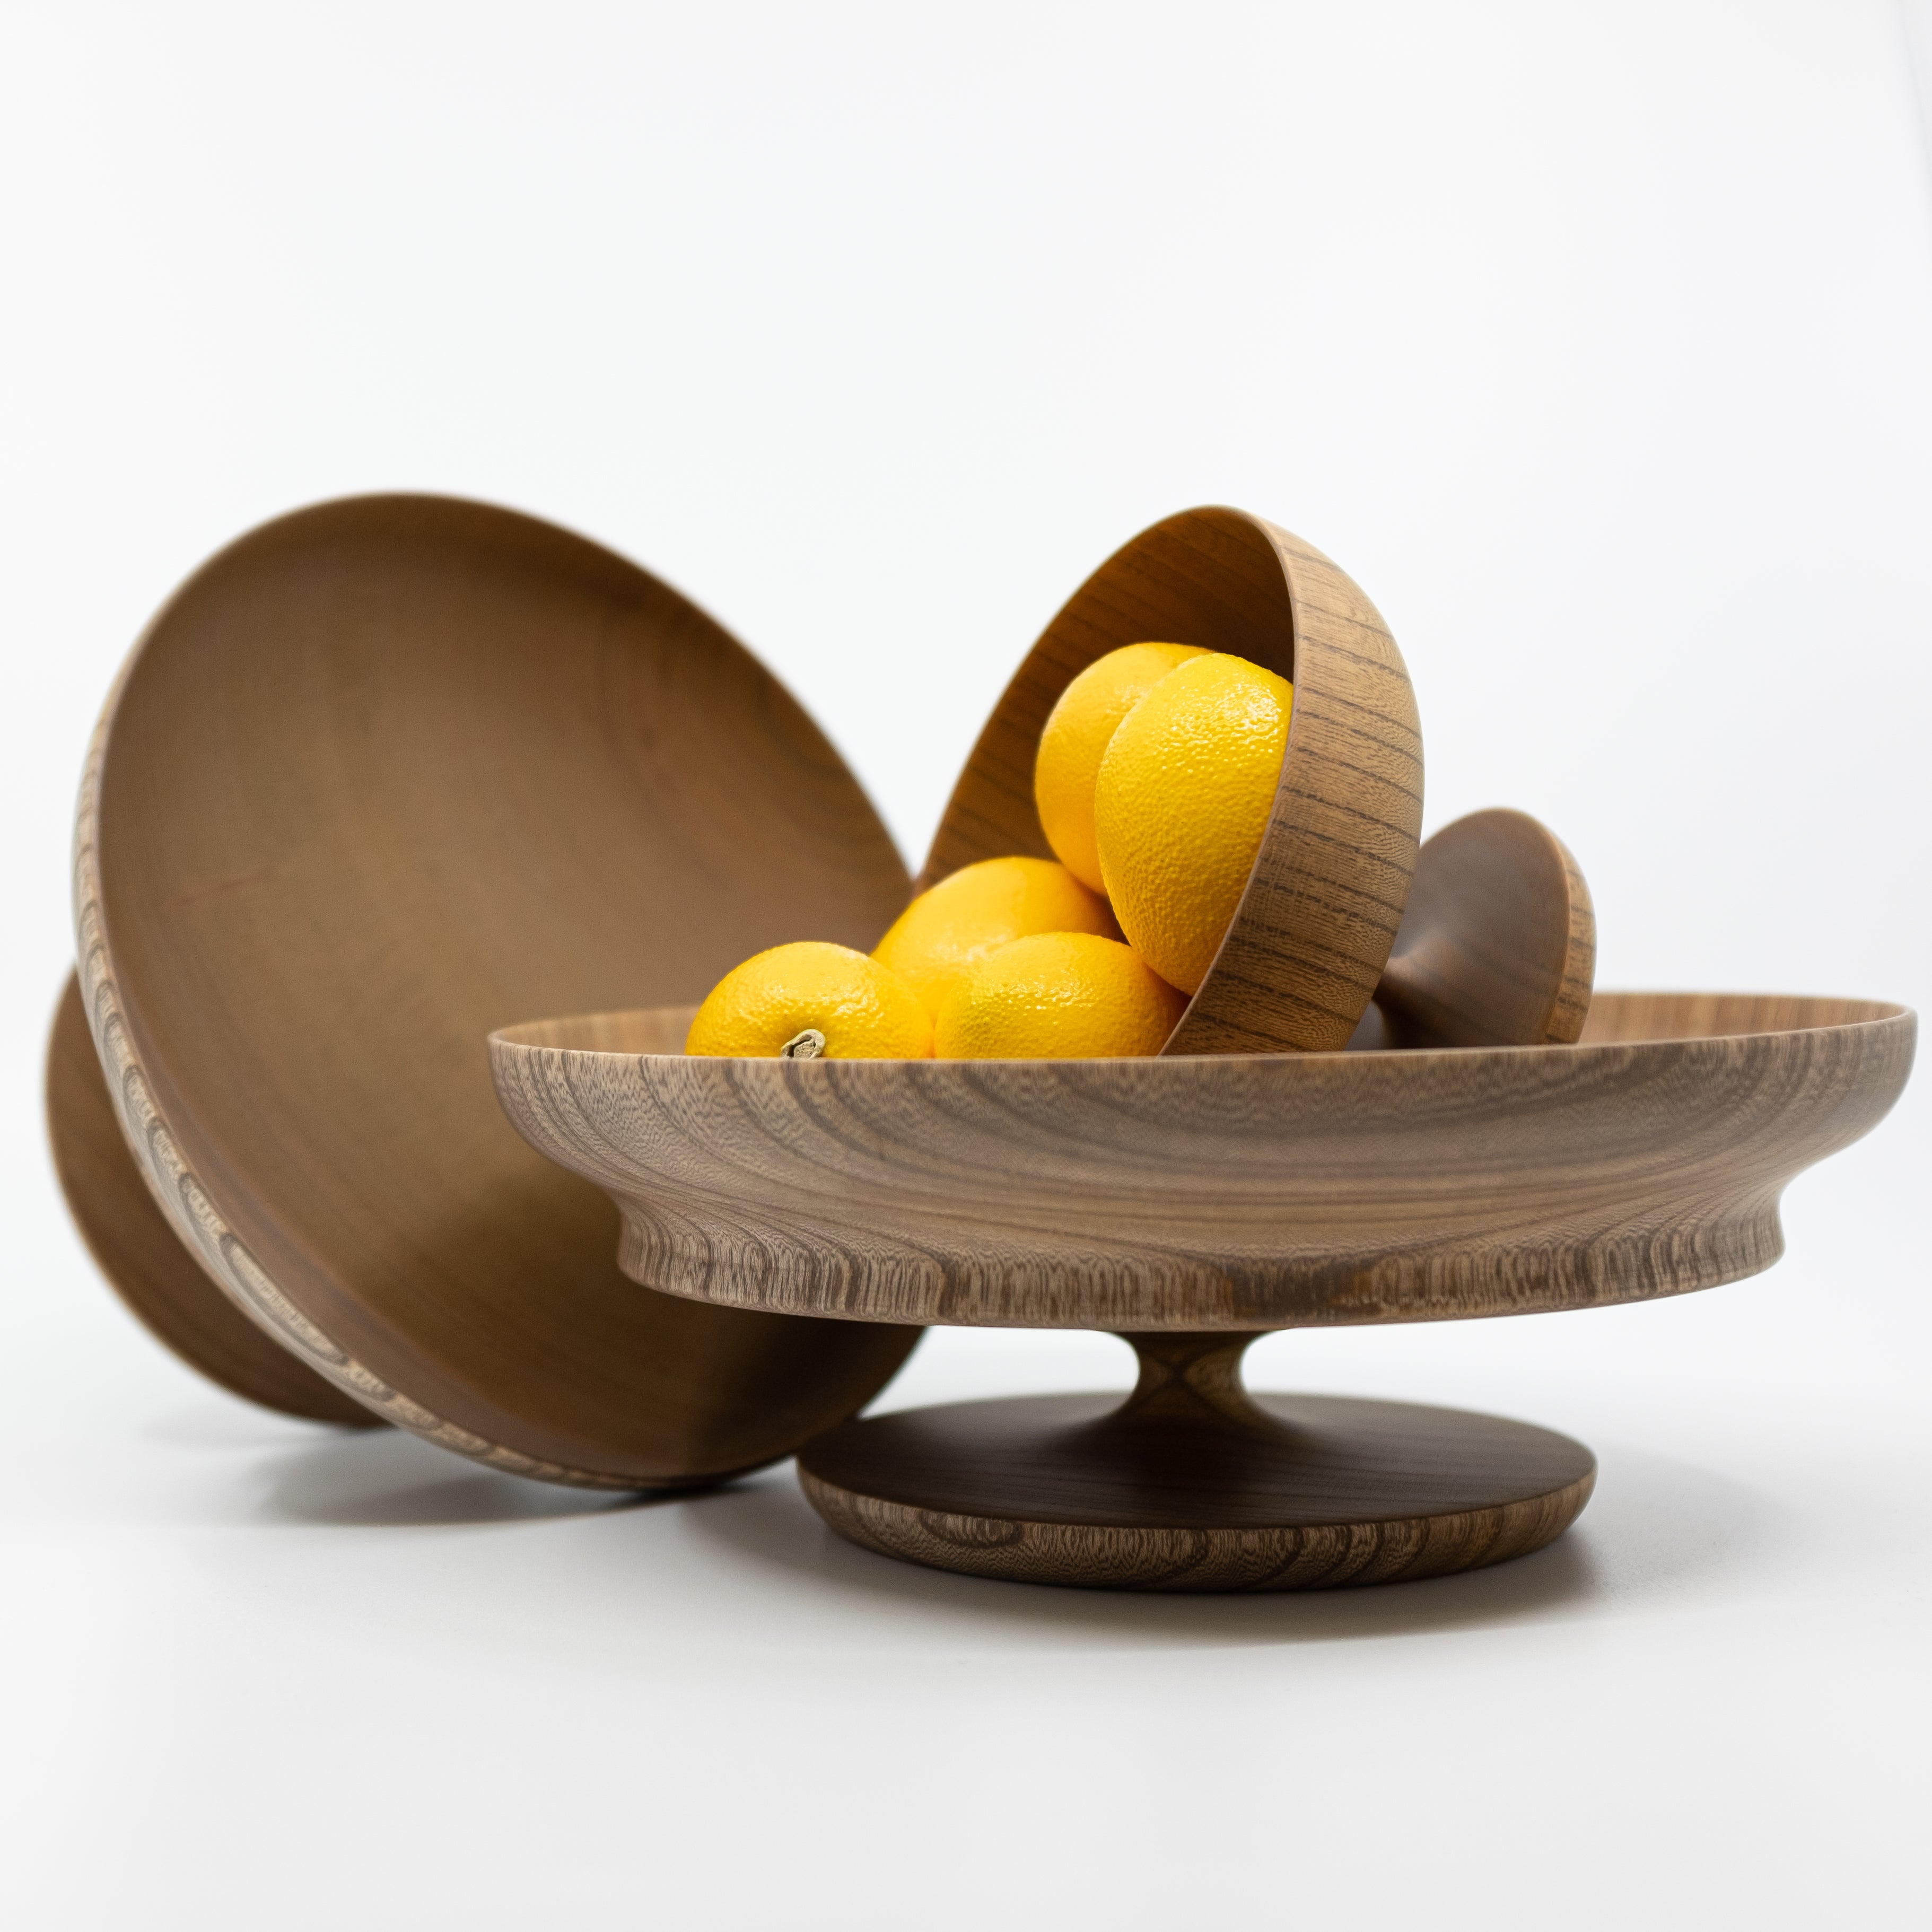 Japanese turned wood bowls